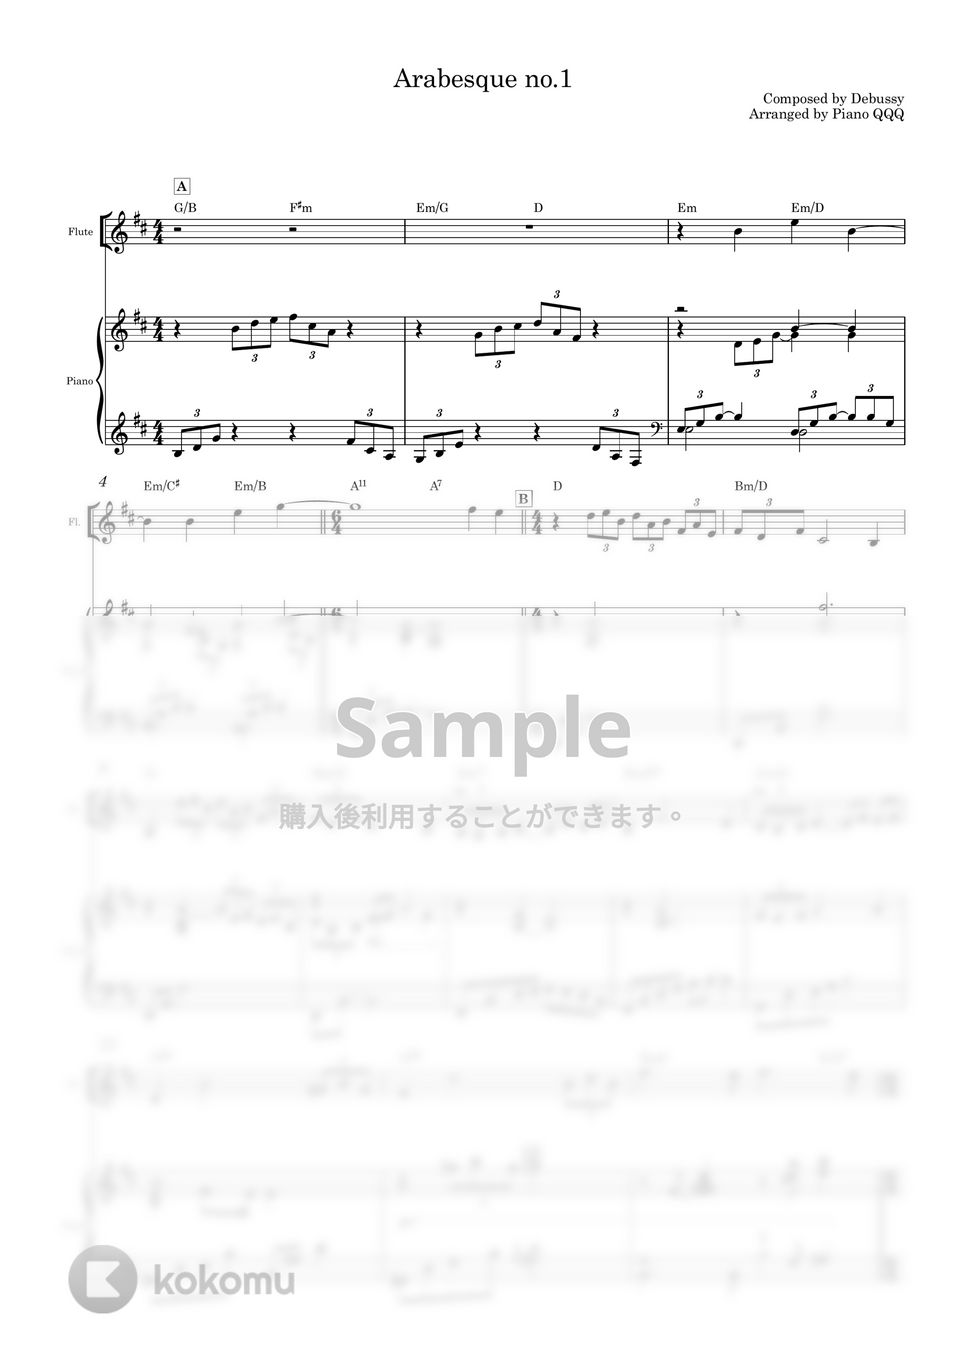 ドビュッシ - アラベスク第1番 (デュエット/ピアノと楽器) by Piano QQQ